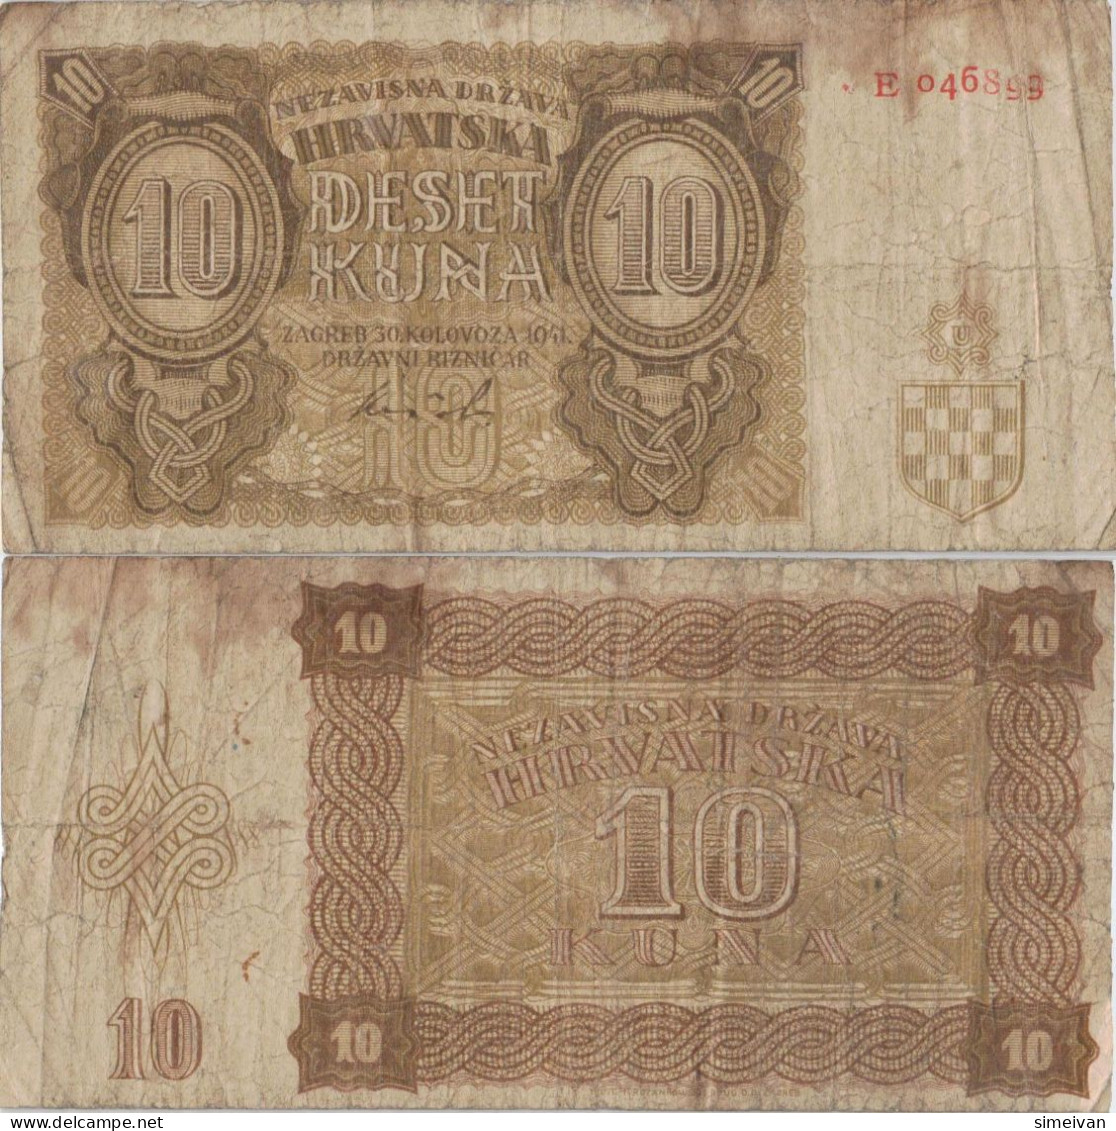 Croatia 10 Kuna 1941 P-5a Banknote Europe Currency Croatie Kroatien #5323 - Kroatien